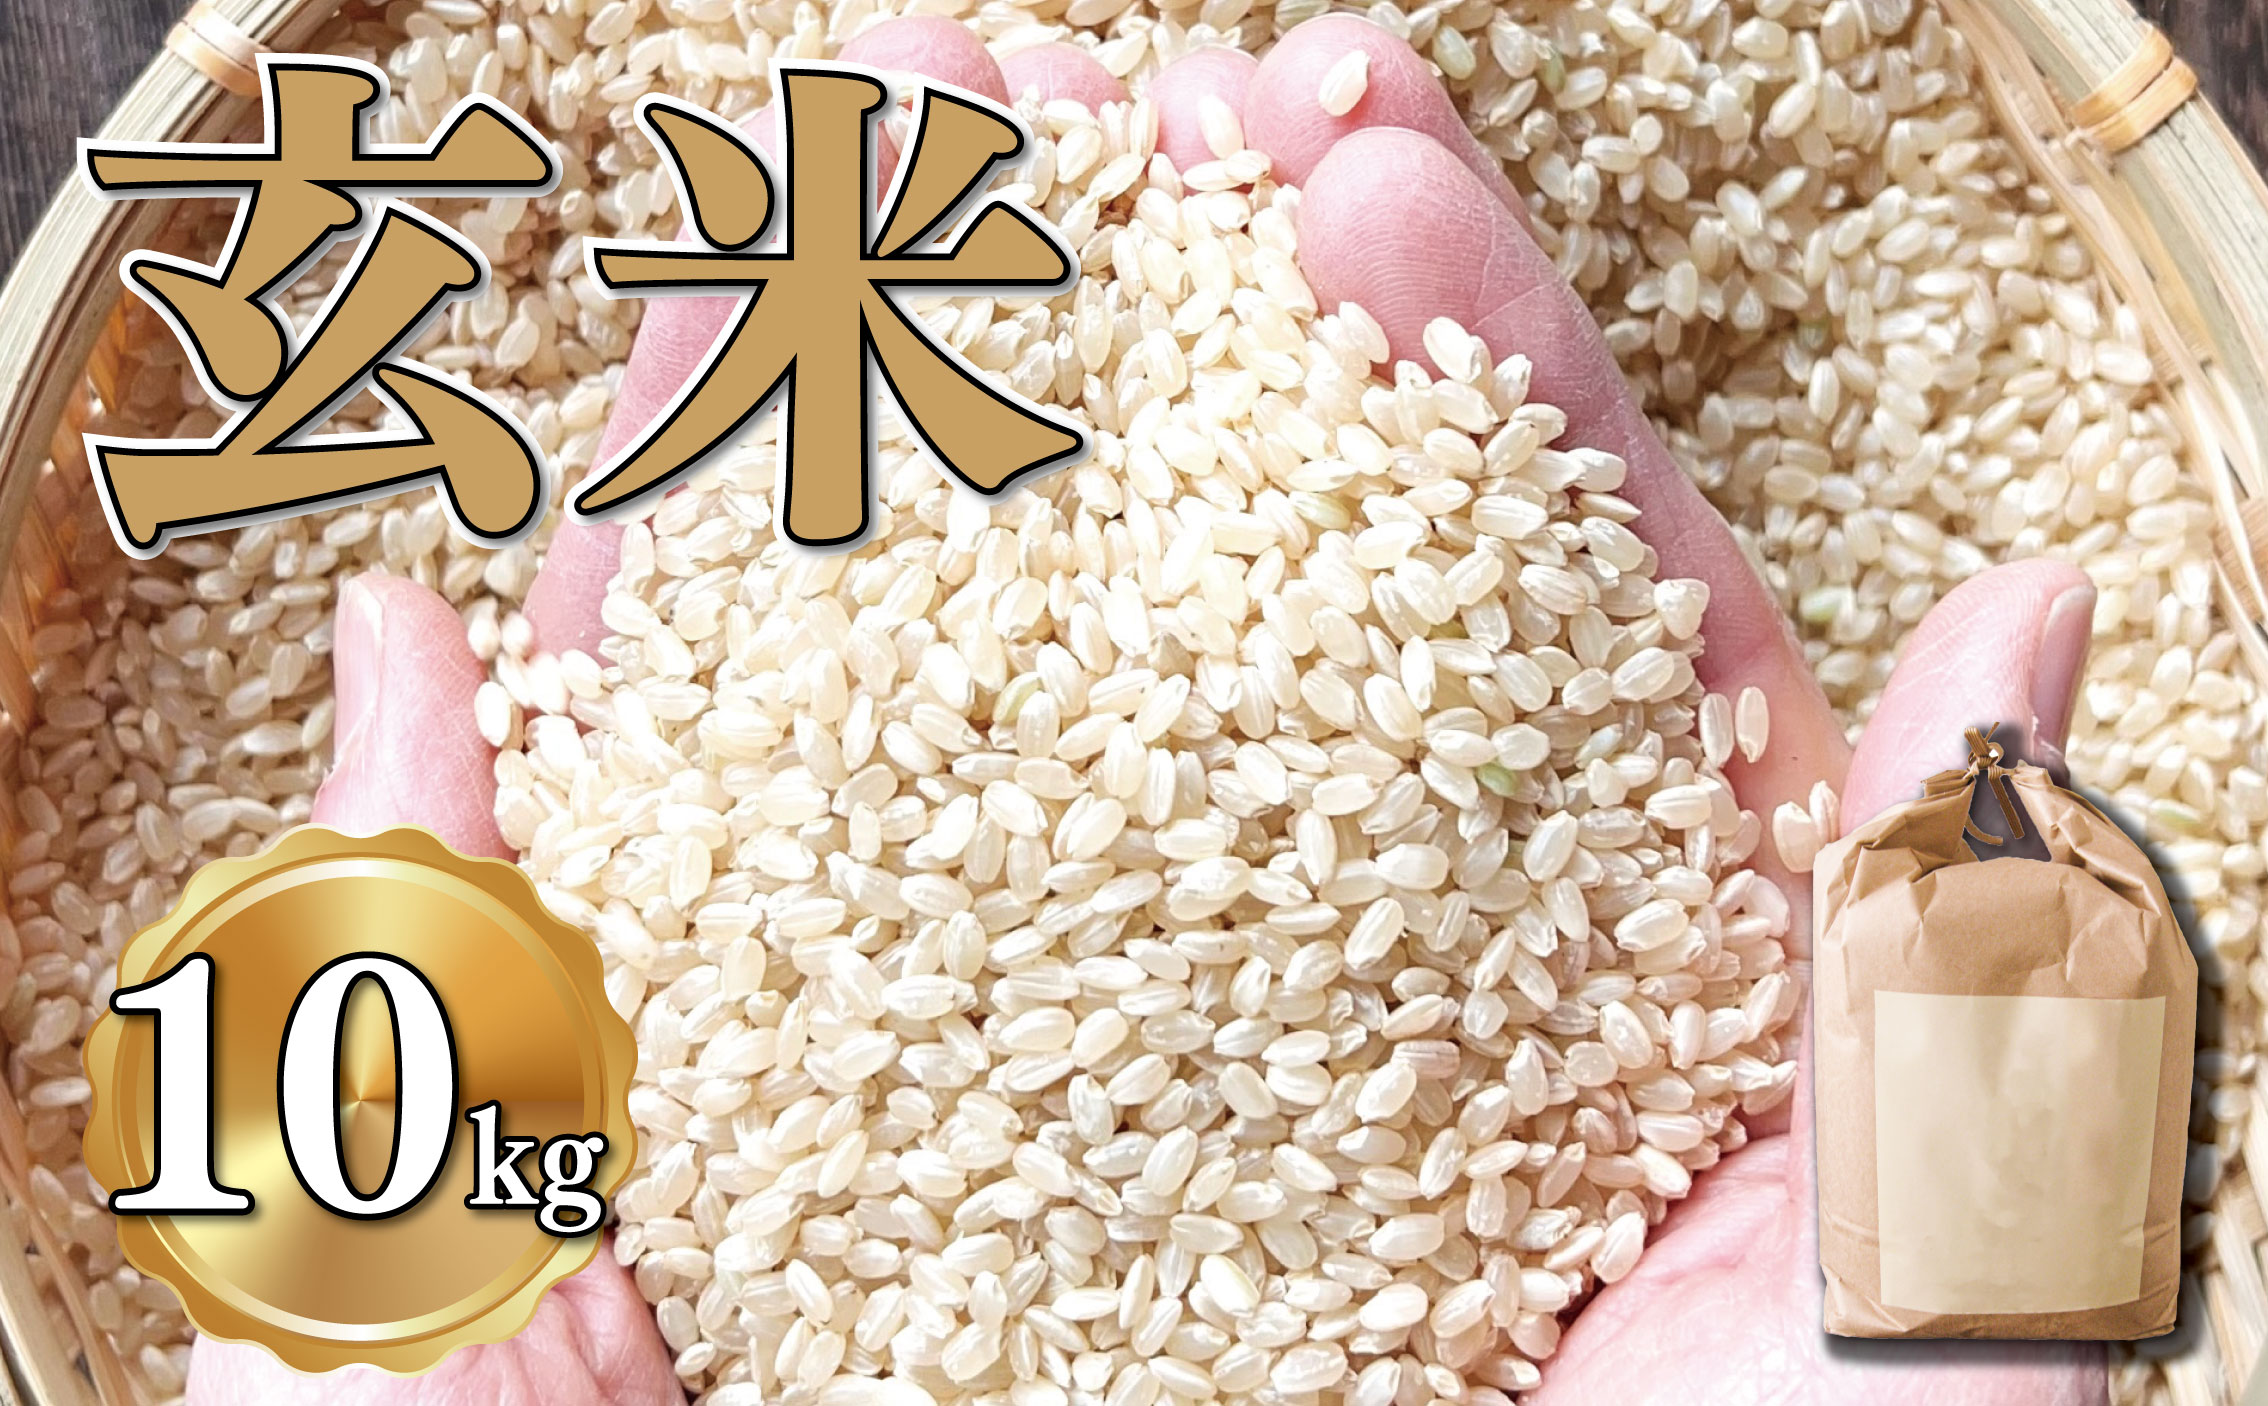 新米 玄米 約10kg 約10キロ お米 栽培期間中農薬不使用 にこまる 安心 安全 こだわり栽培 ビタミン ミネラル 食物繊維